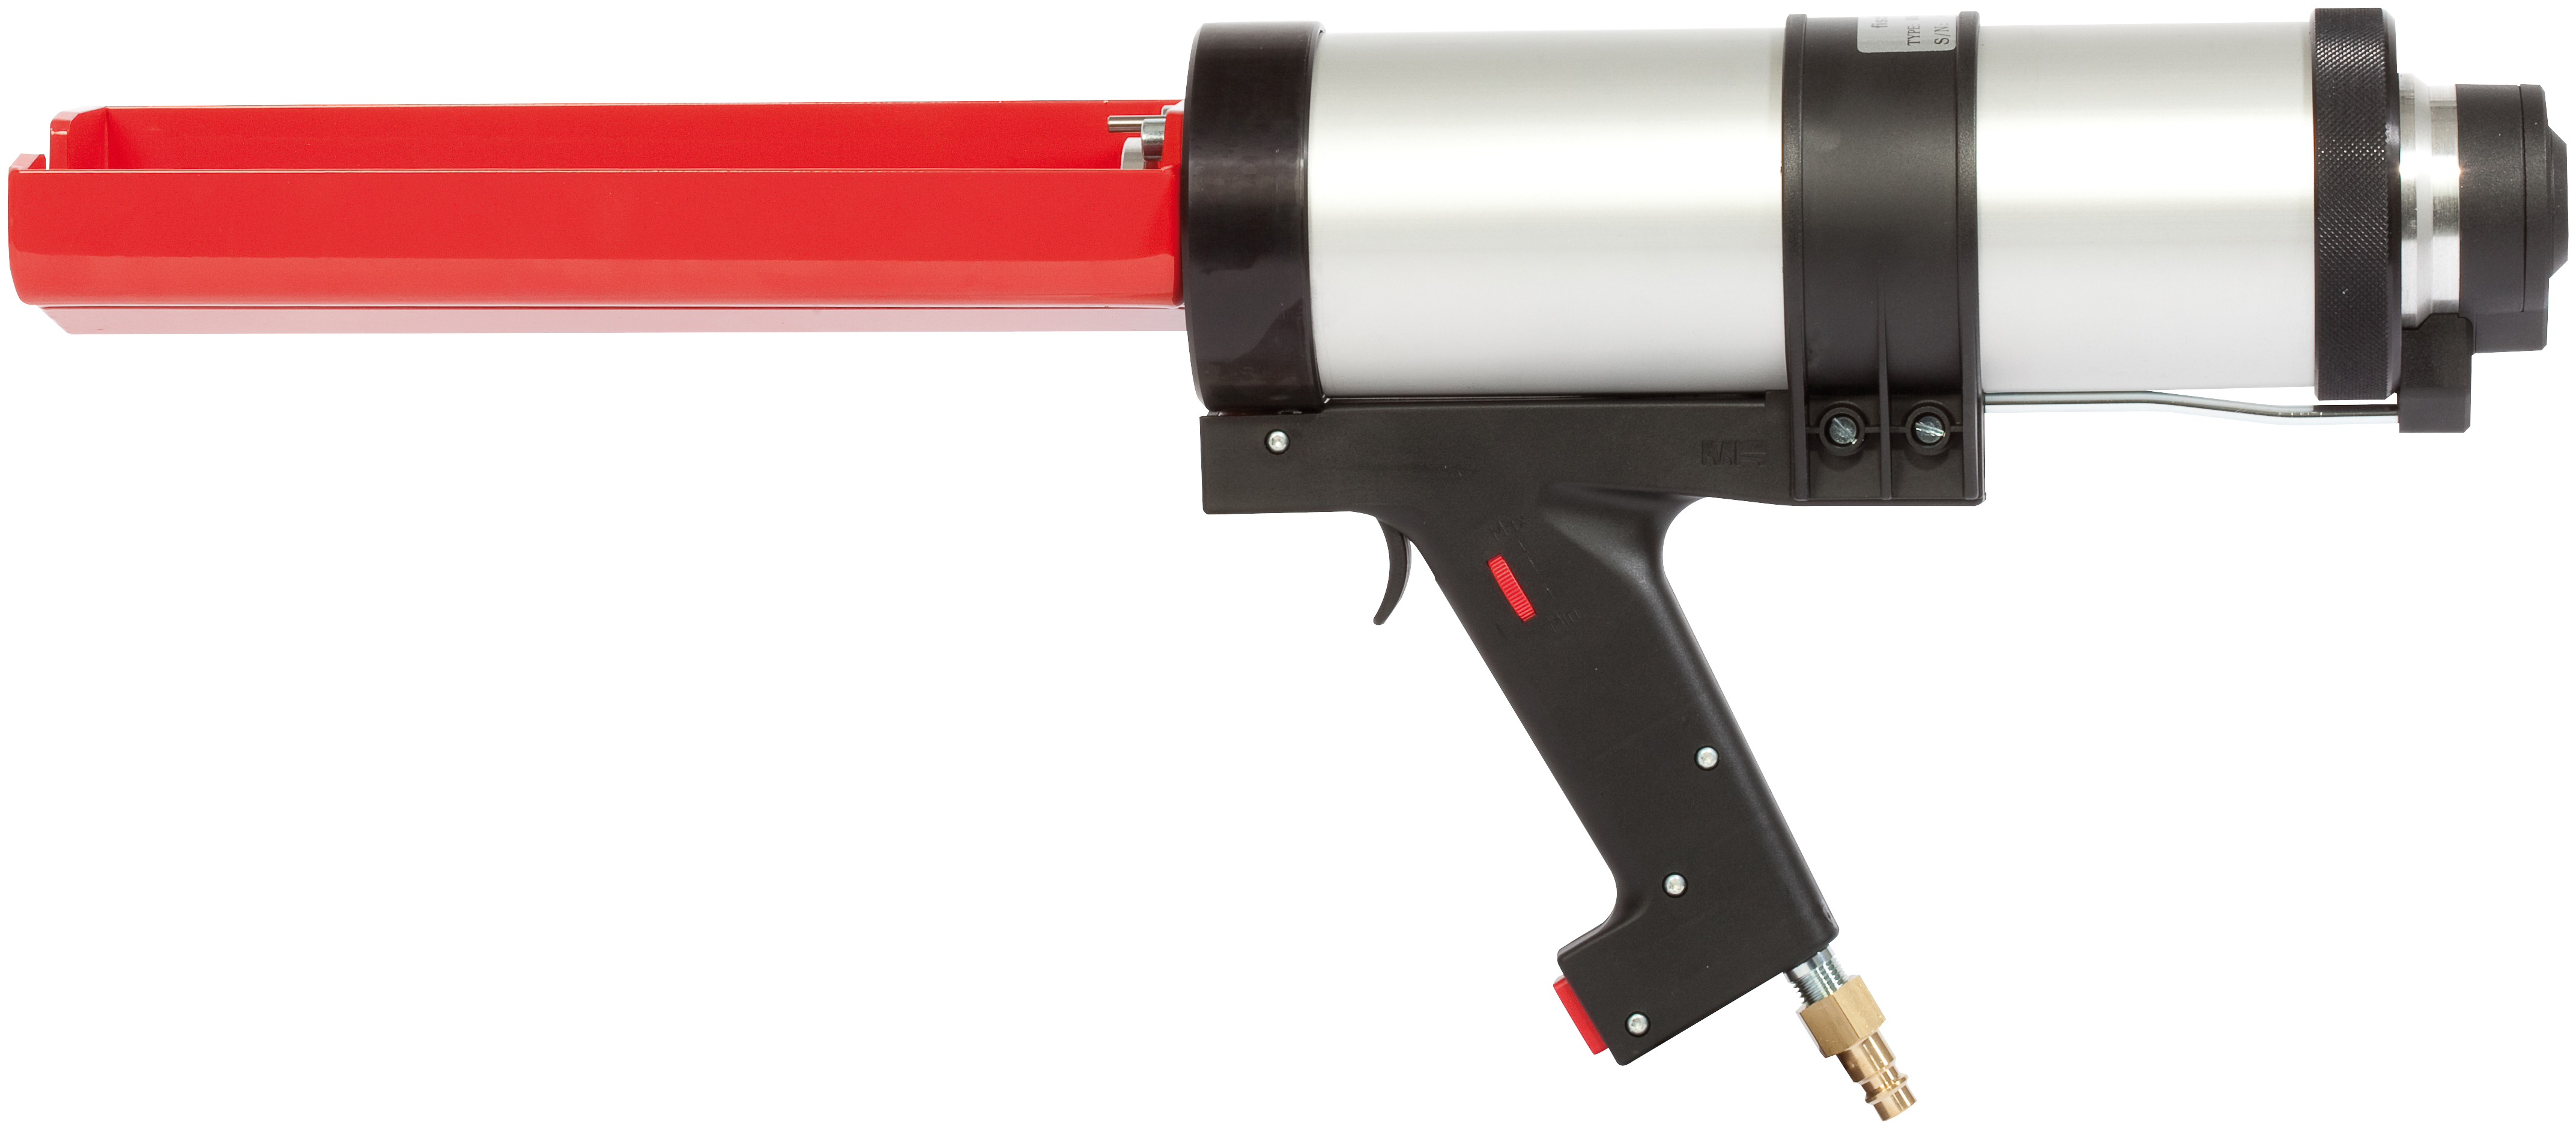 fischer Pistola pneumatica FIS DP S-L per ancorante chimico (1 Pz.) Pistola pneumatica.